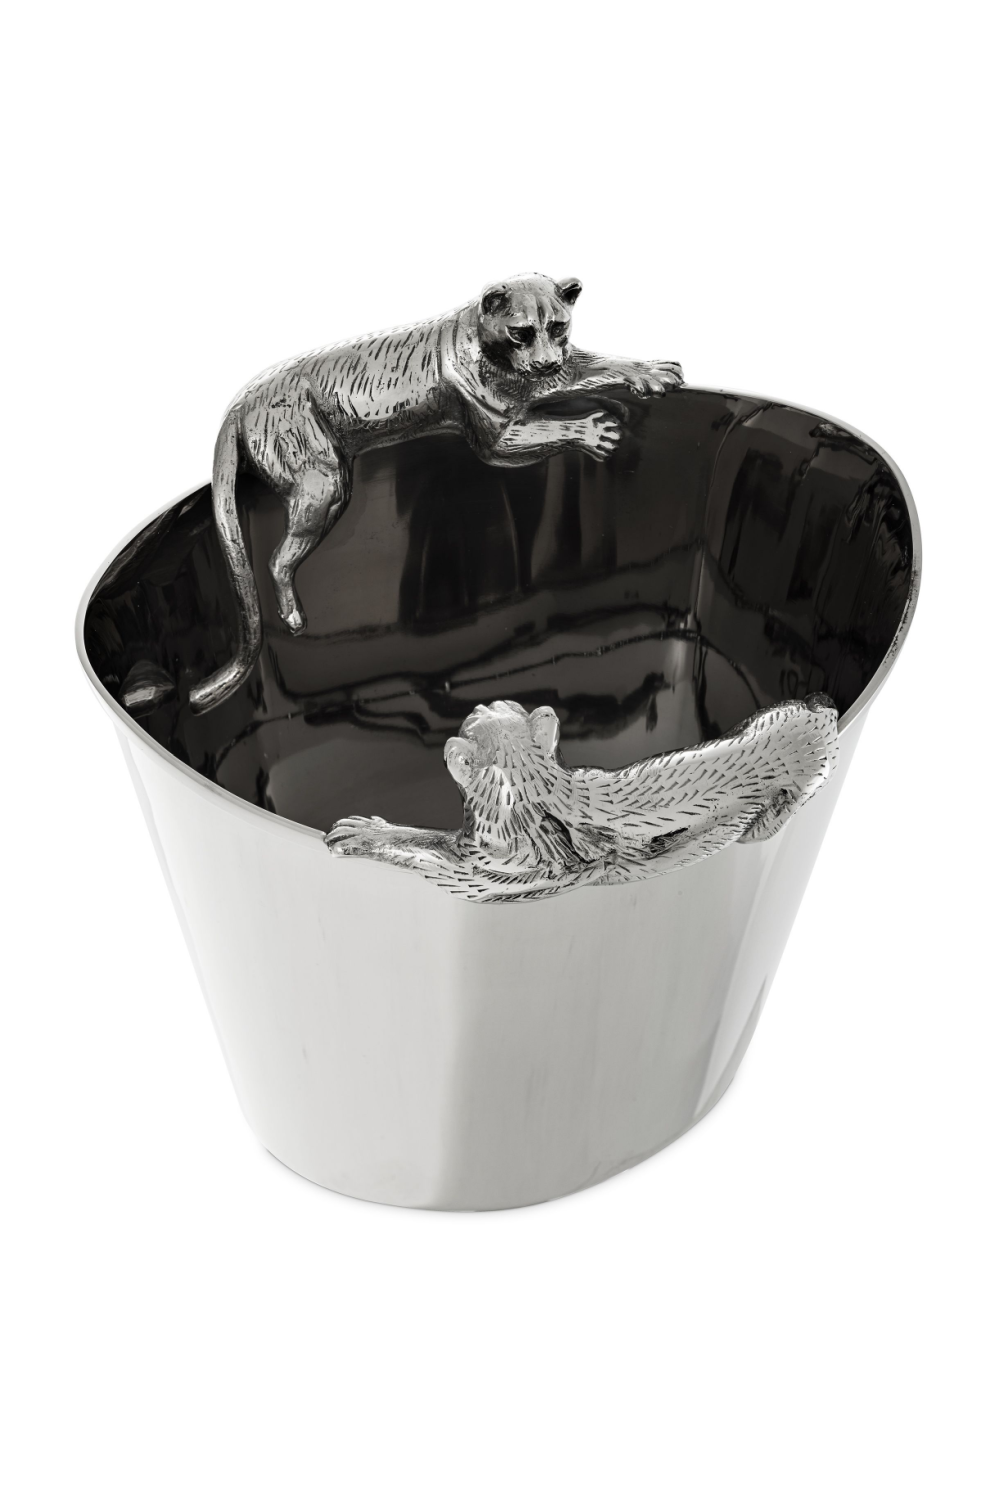 Silver Puma Wine Cooler | Eichholtz Jordan | #1 Eichholtz Retailer